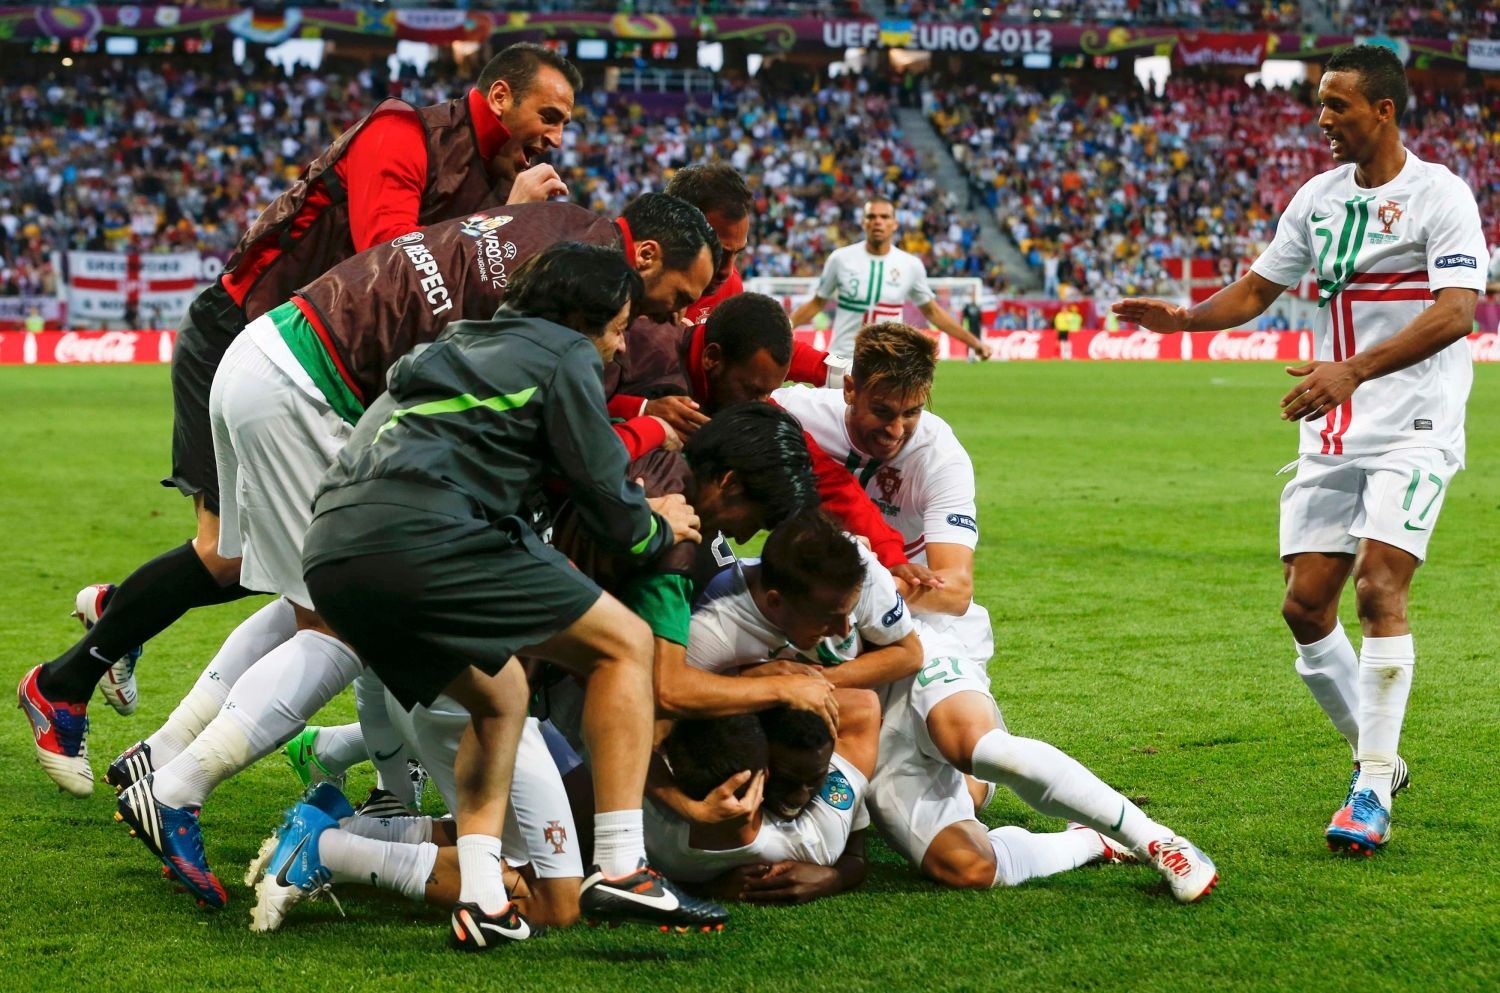 Silvestre Varela slaví rozhodující gól v utkání Dánska s Portugalskem na Euru 2012